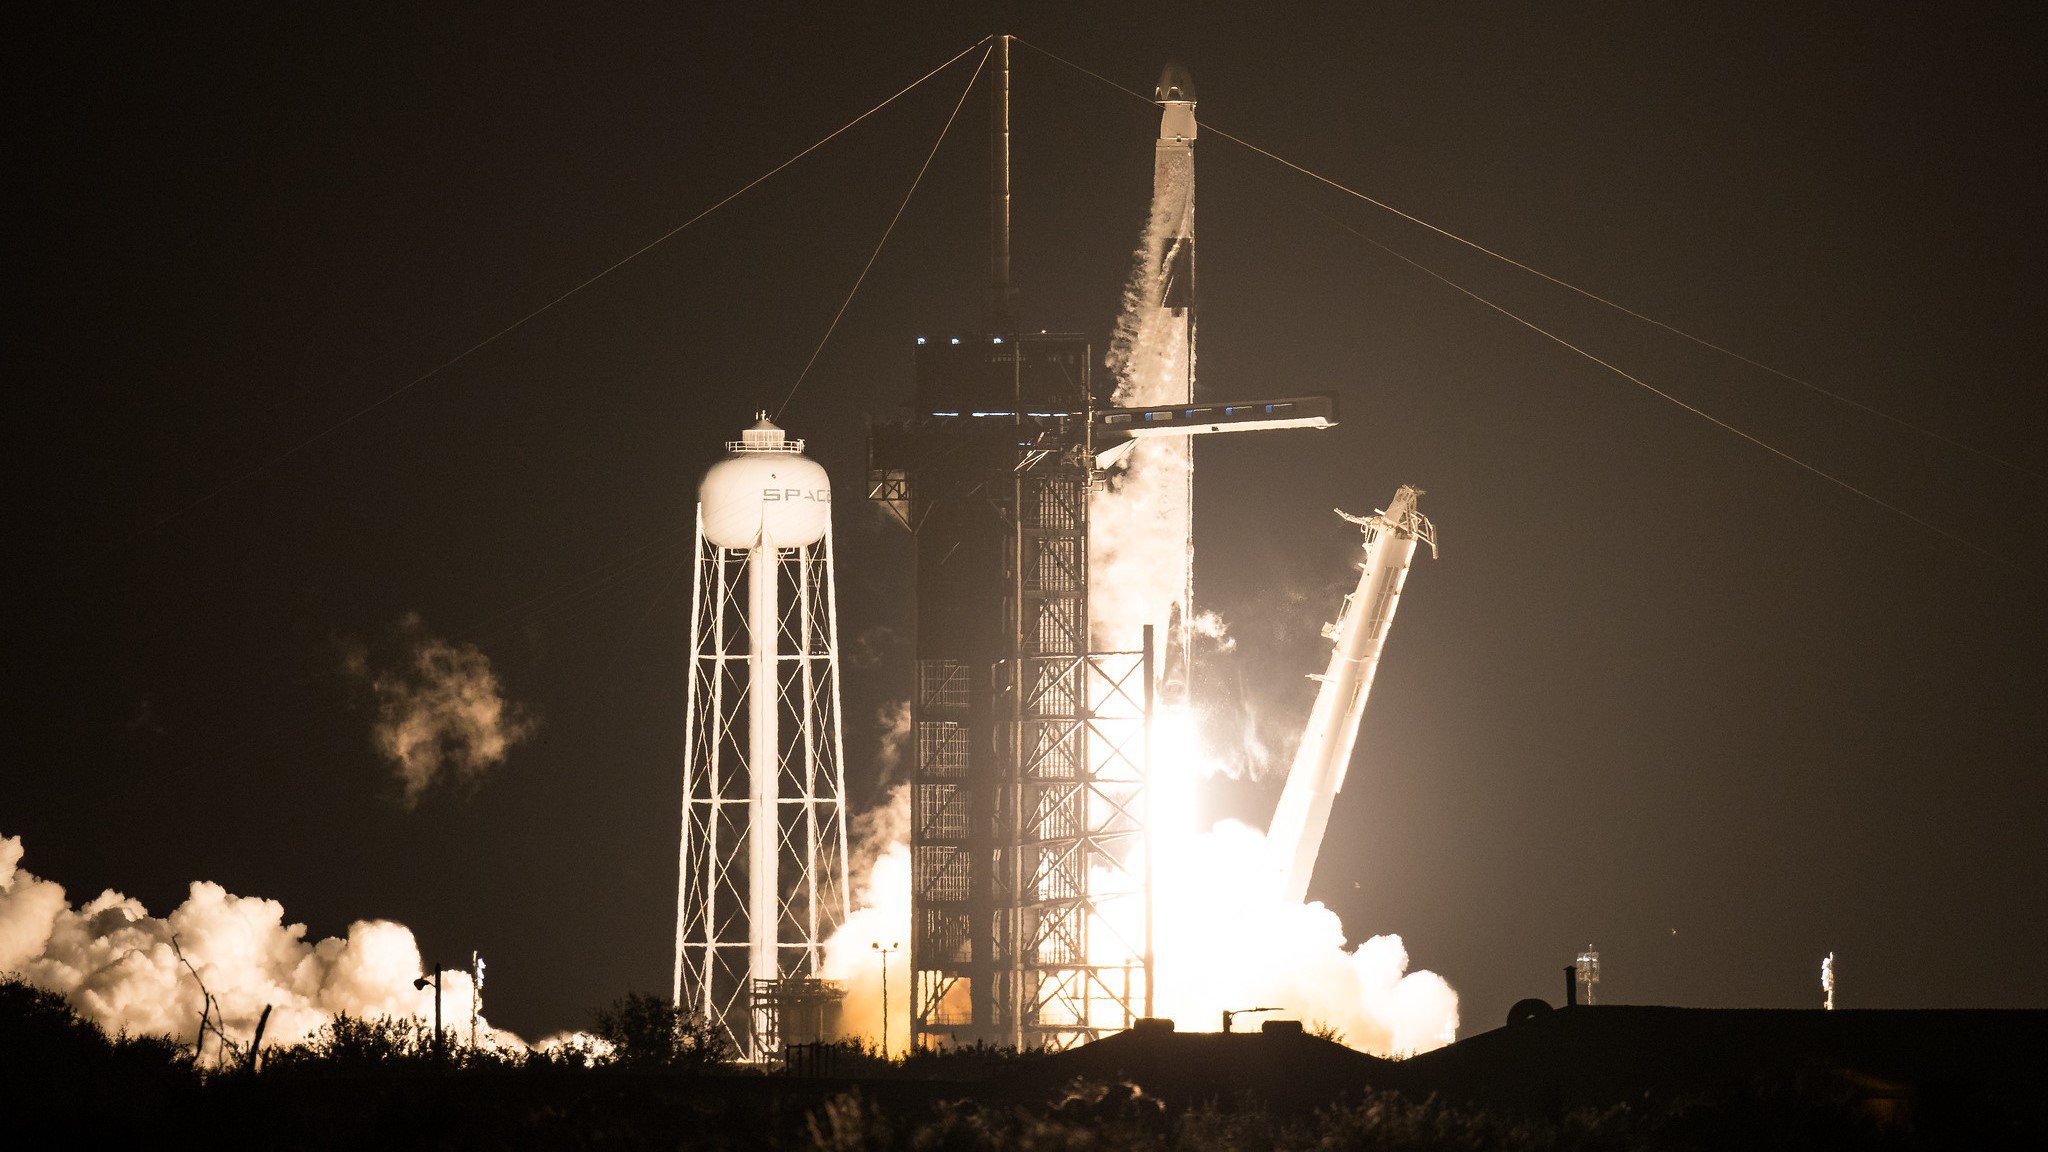 Imagem do lançamento da crew-1